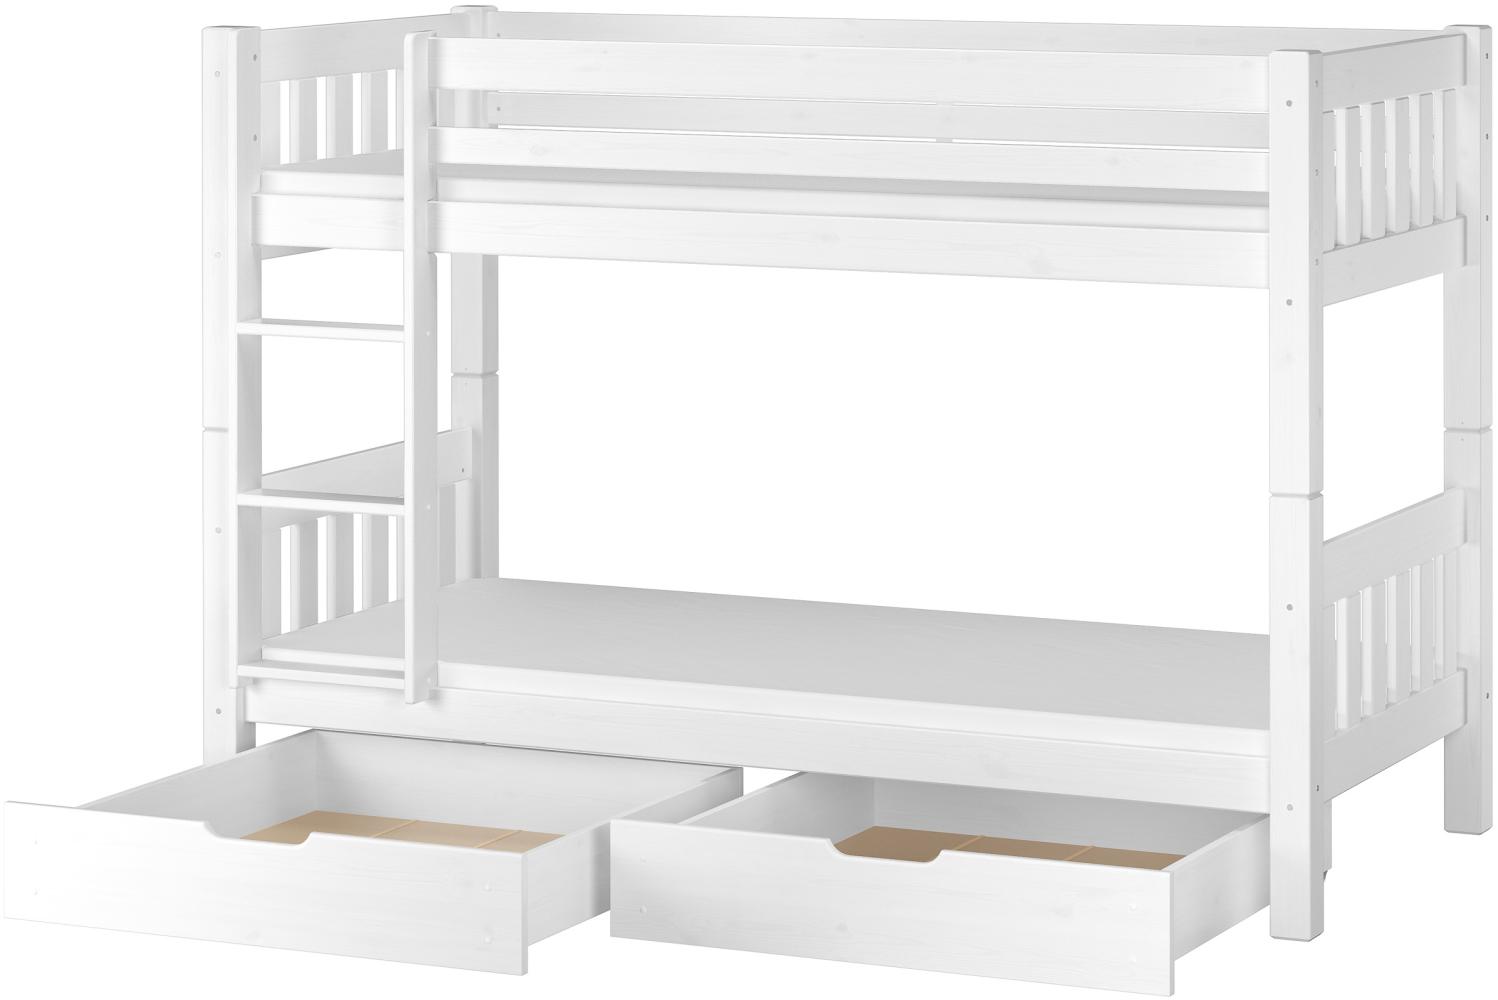 Erst-Holz 60.06-09 Etagenbett 90x200 cm, weiß, Kiefer massiv, inkl. Rollroste, Matratzen und 2 Bettkästen Bild 1